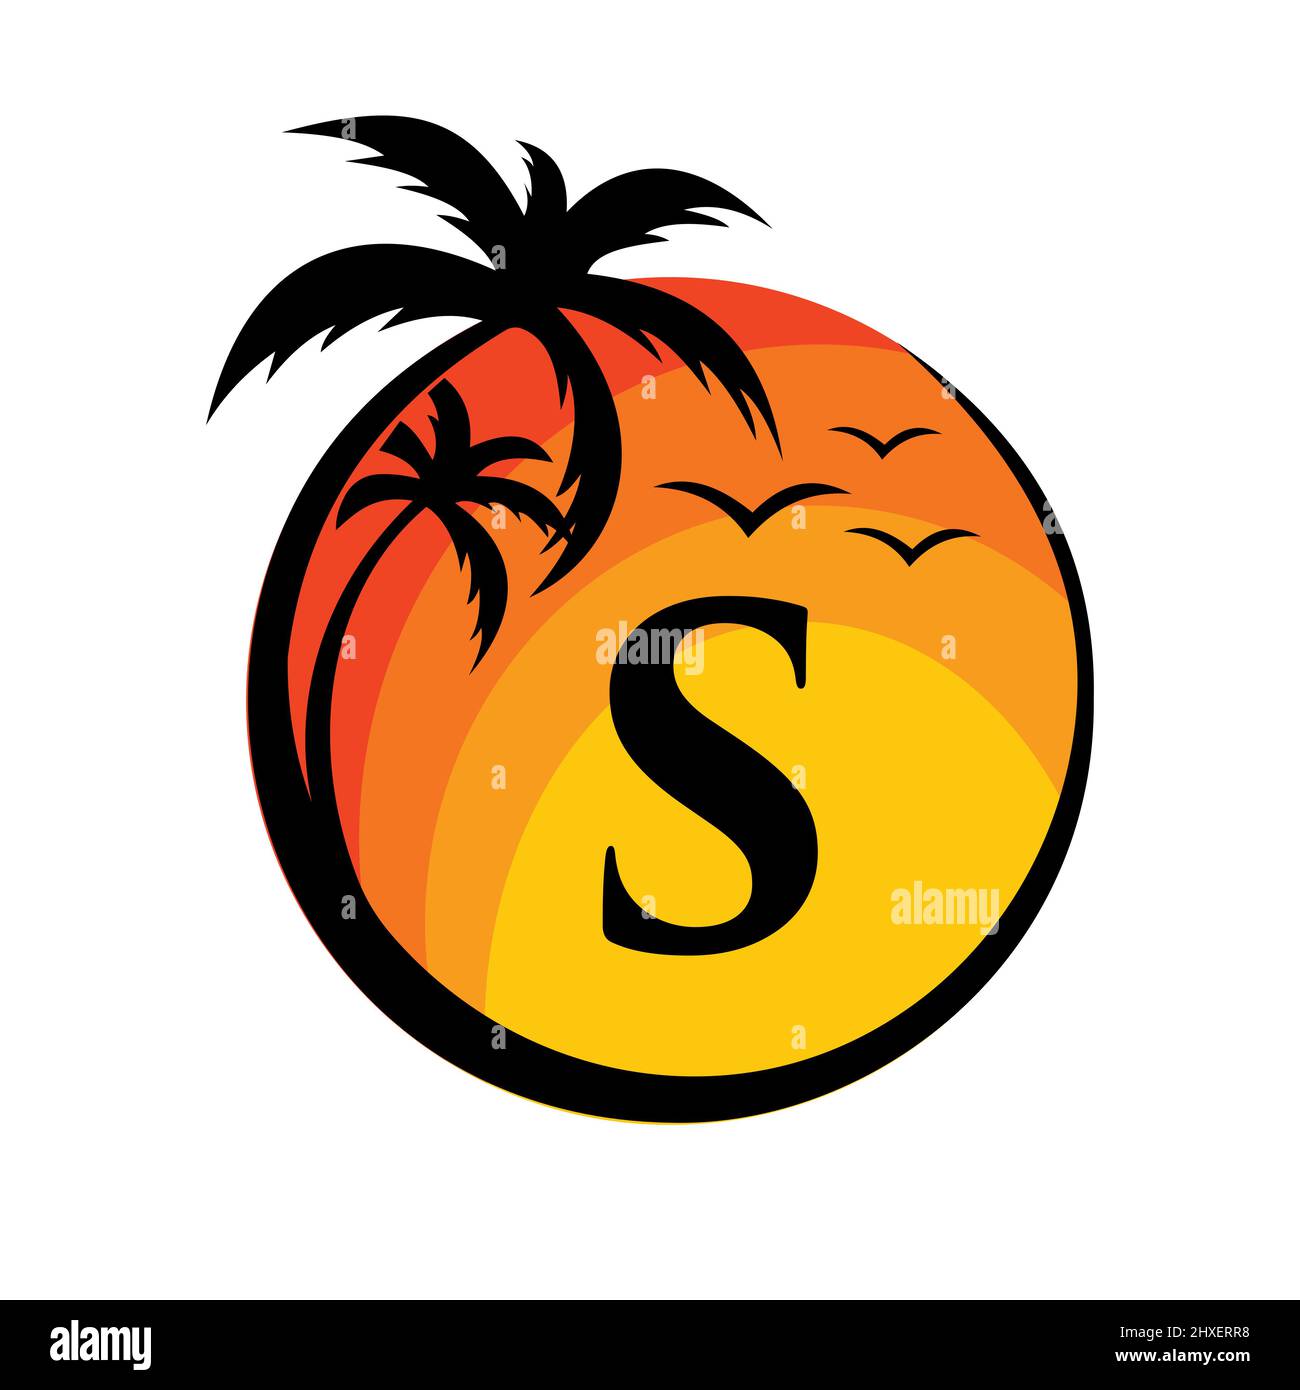 Logo de plage sur l'affiche vectorielle lettre S. Vacances d'été sur la plage tropicale avec le logotype S. Sunset Summer Travel logo Plage, Mer, Sunset logo Design Illustration de Vecteur